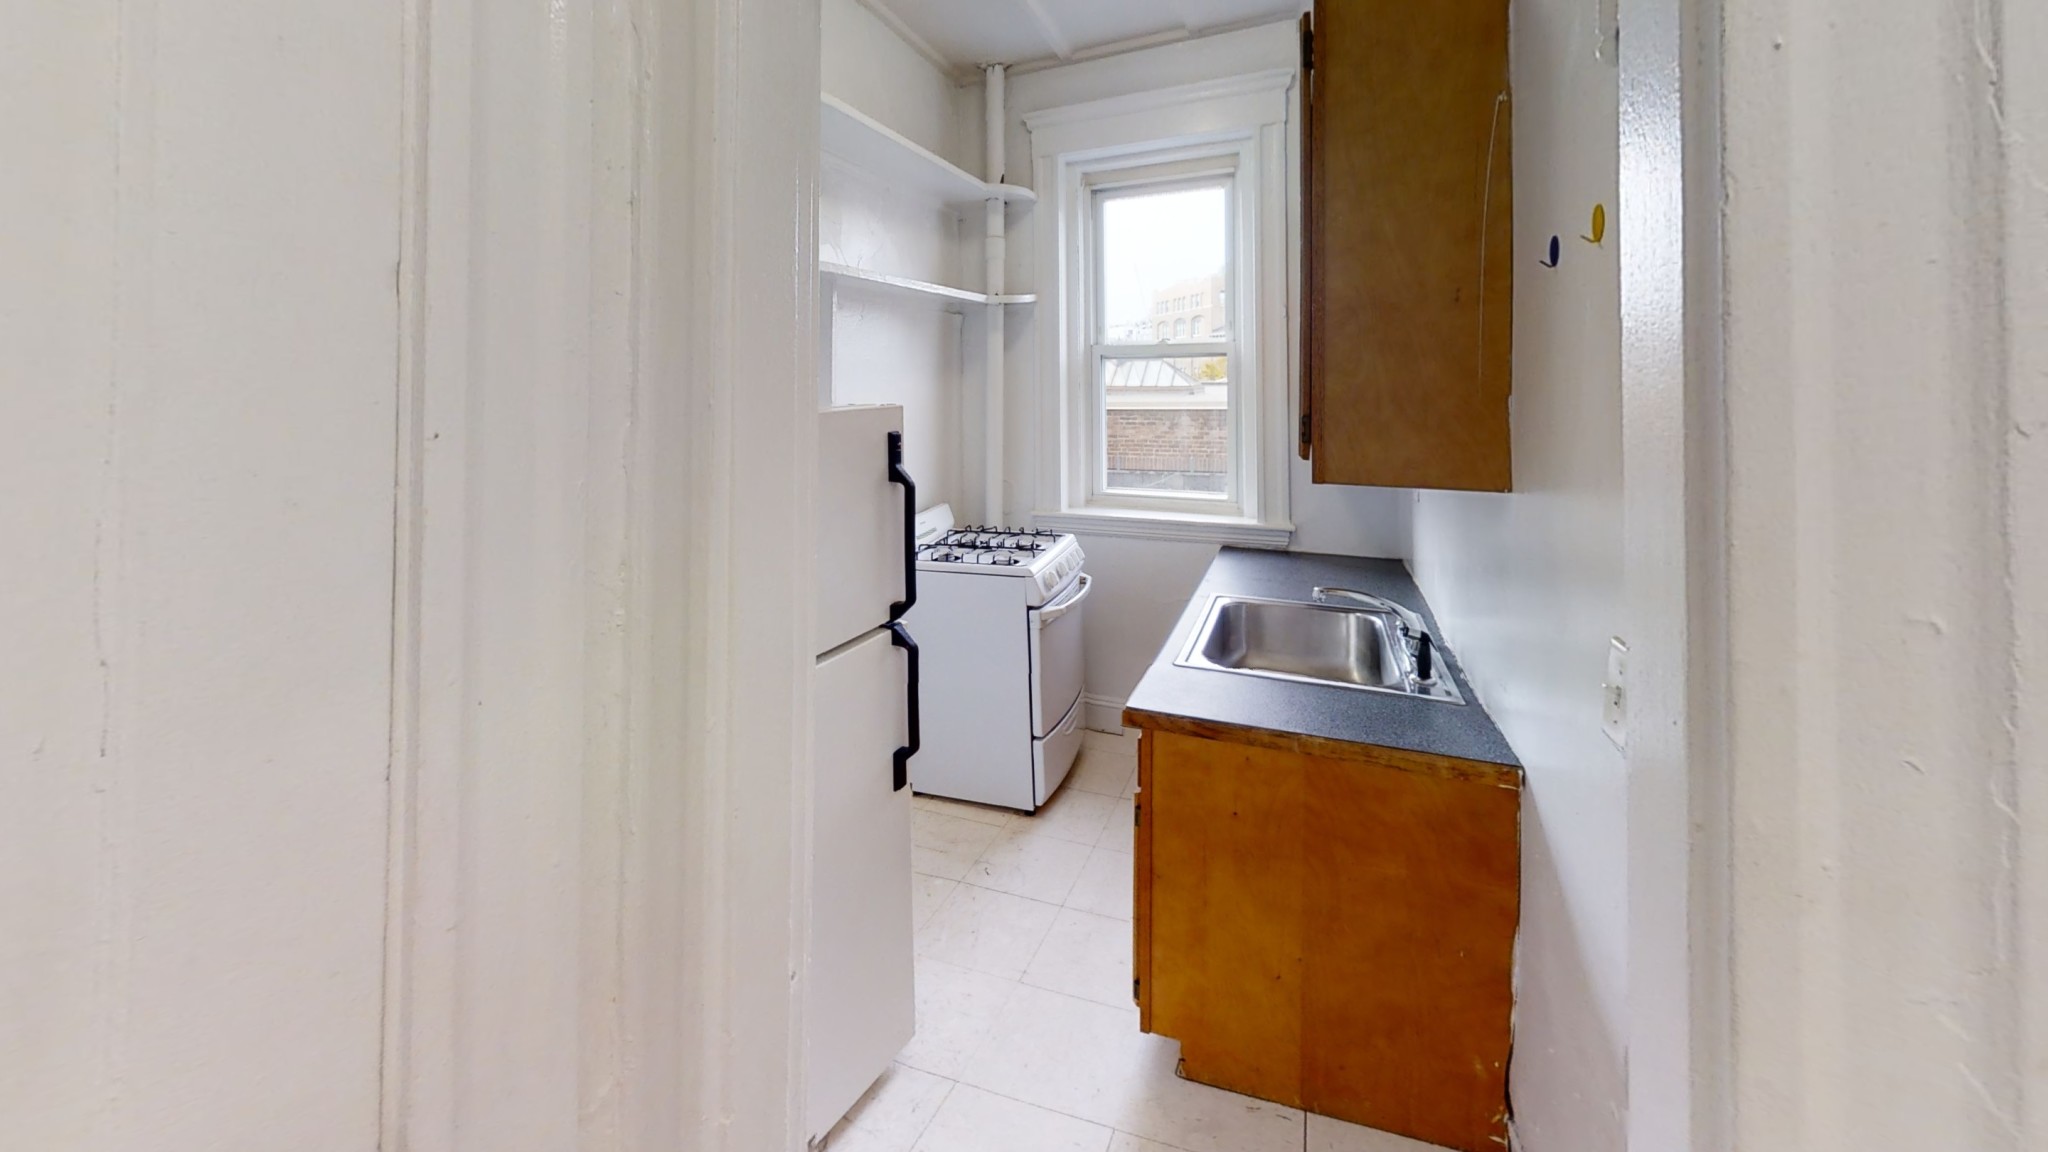 Photos of apartment on Boylston St.,Boston MA 02215